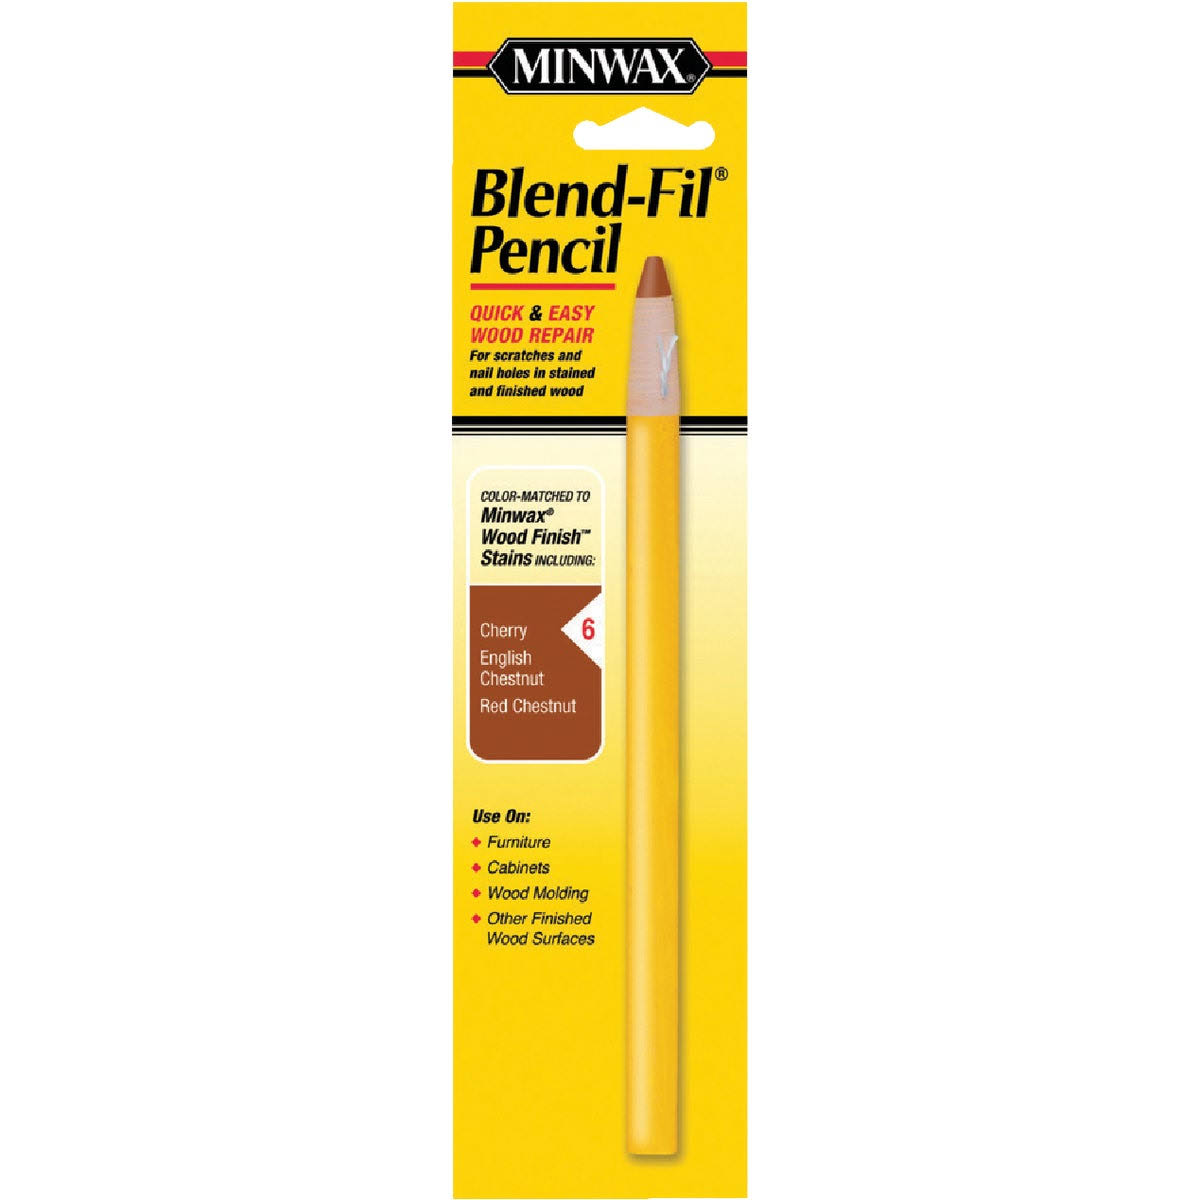 Blend-fil #6 Pencil, Minwax, 11006